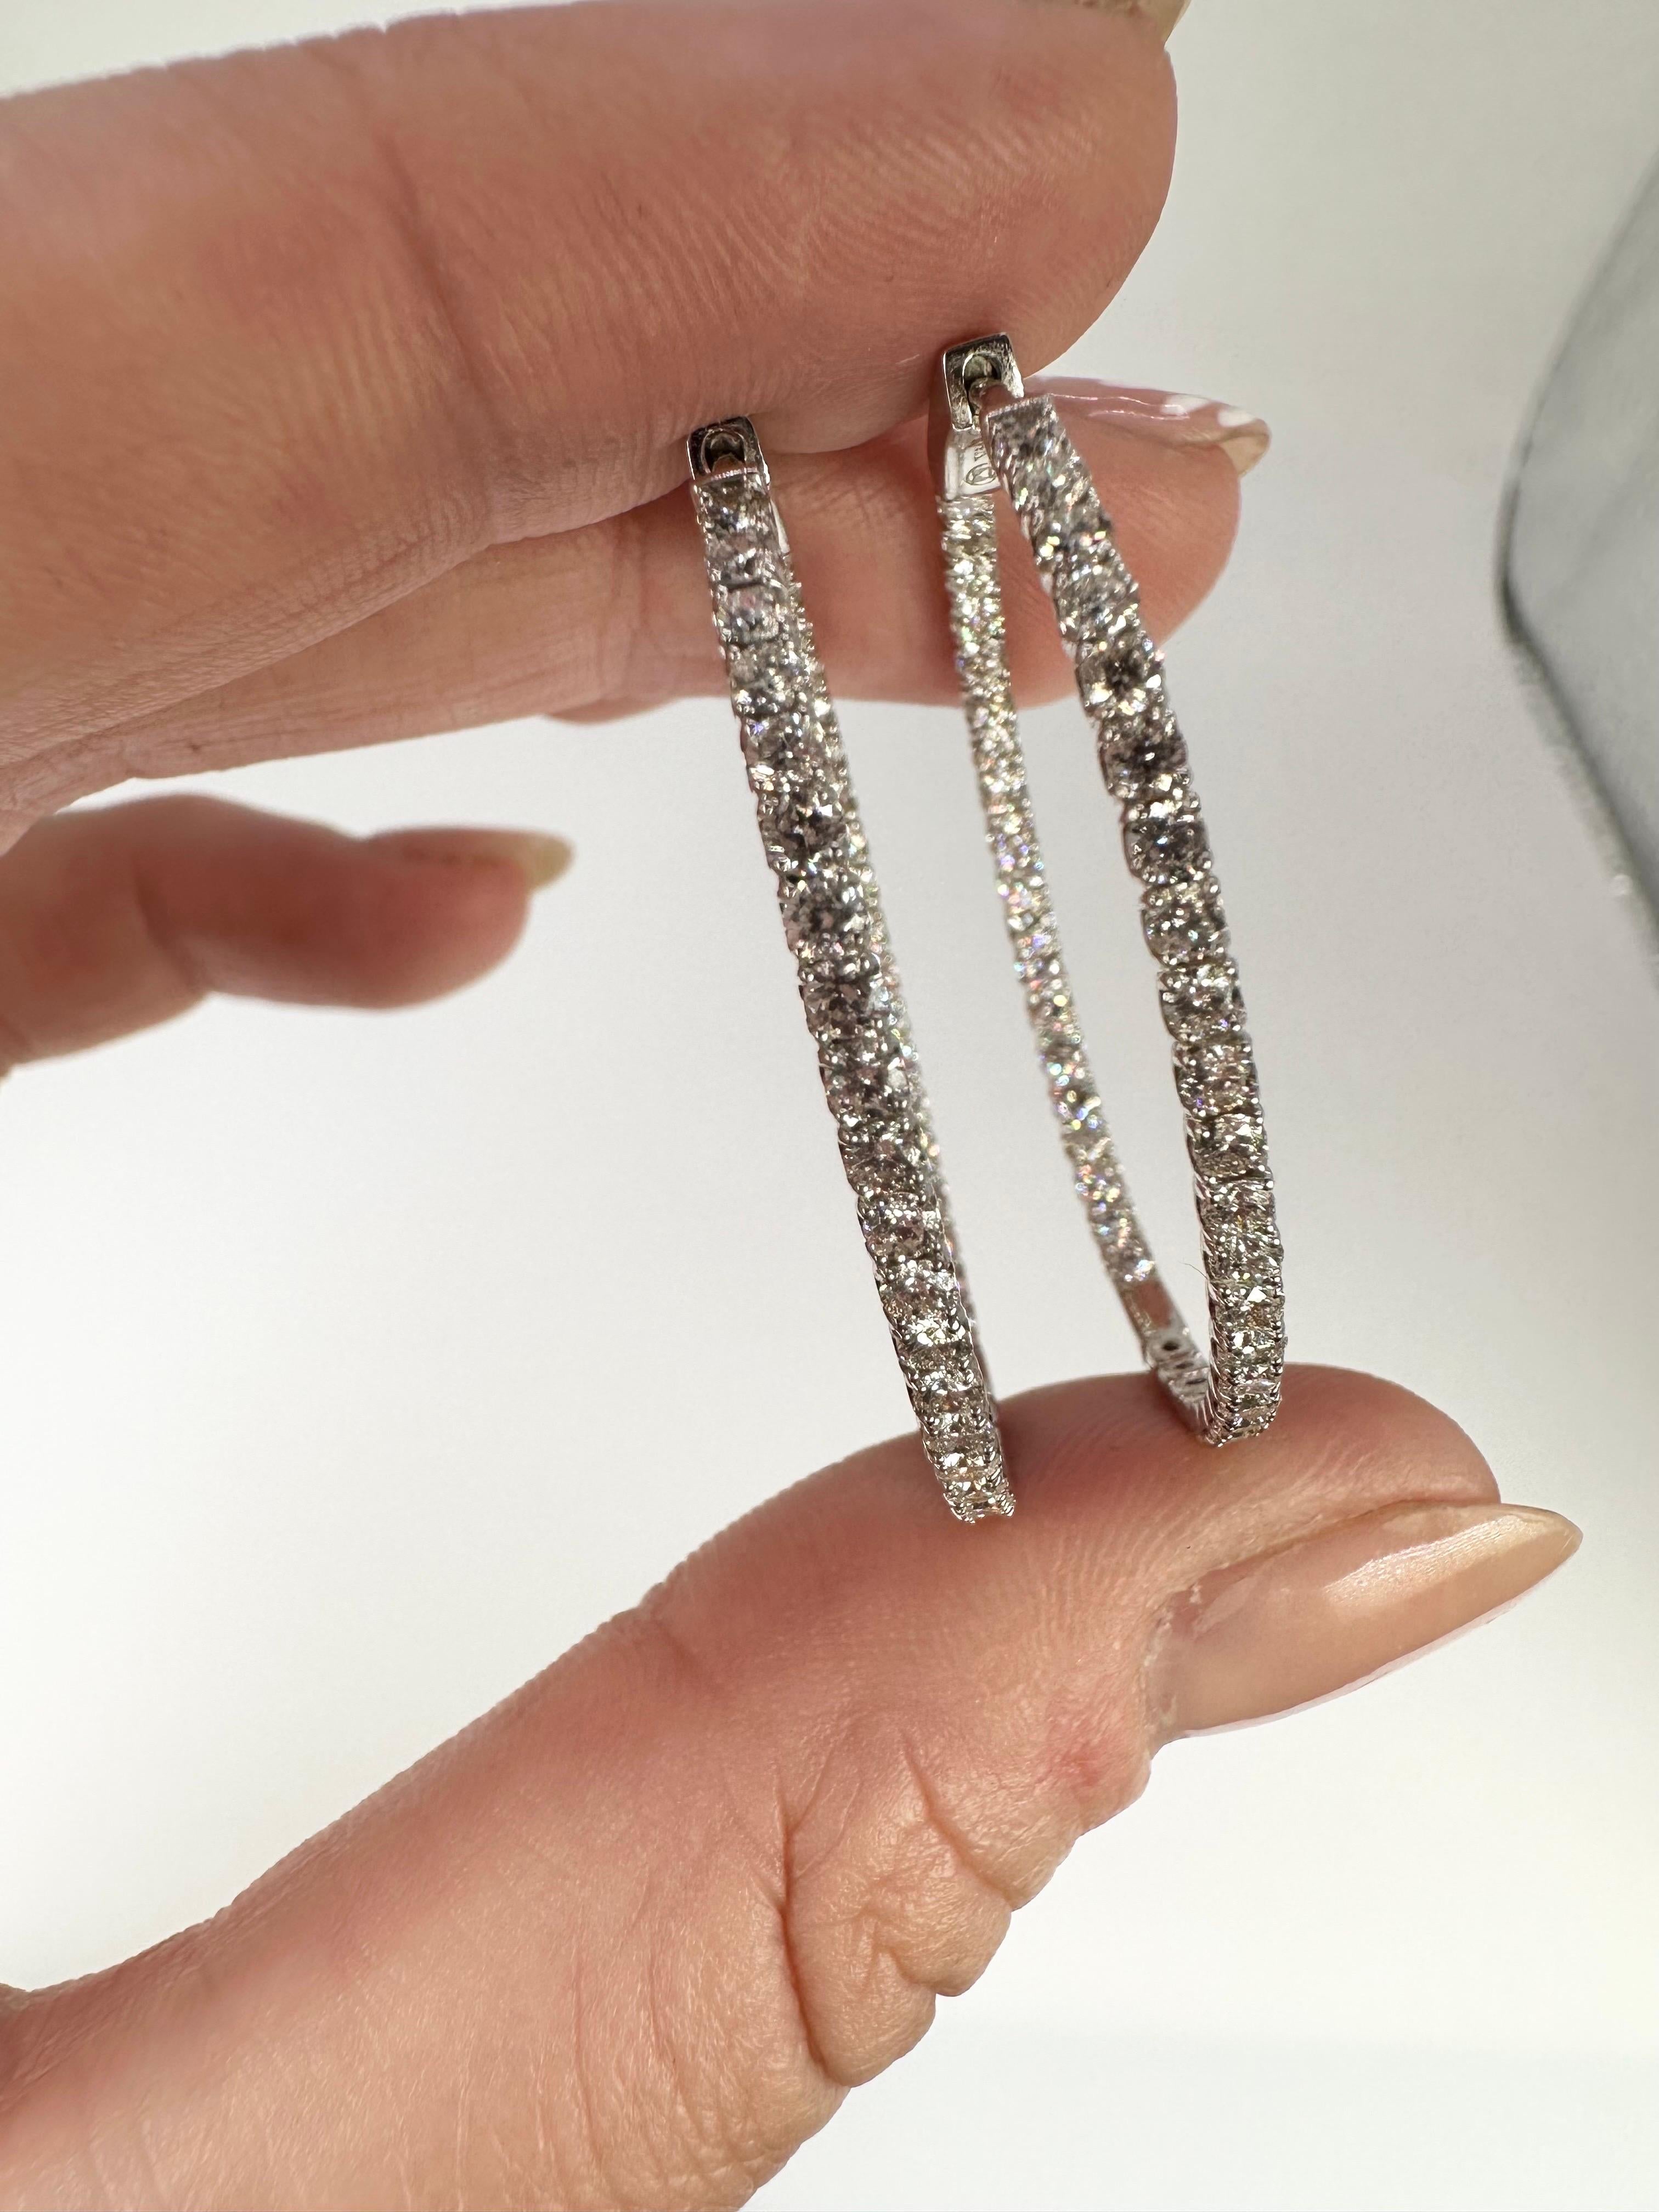 Women's Diamond Hoop Earrings 14 Karat White Gold Inside Out Earrings 3 Carats Wow For Sale